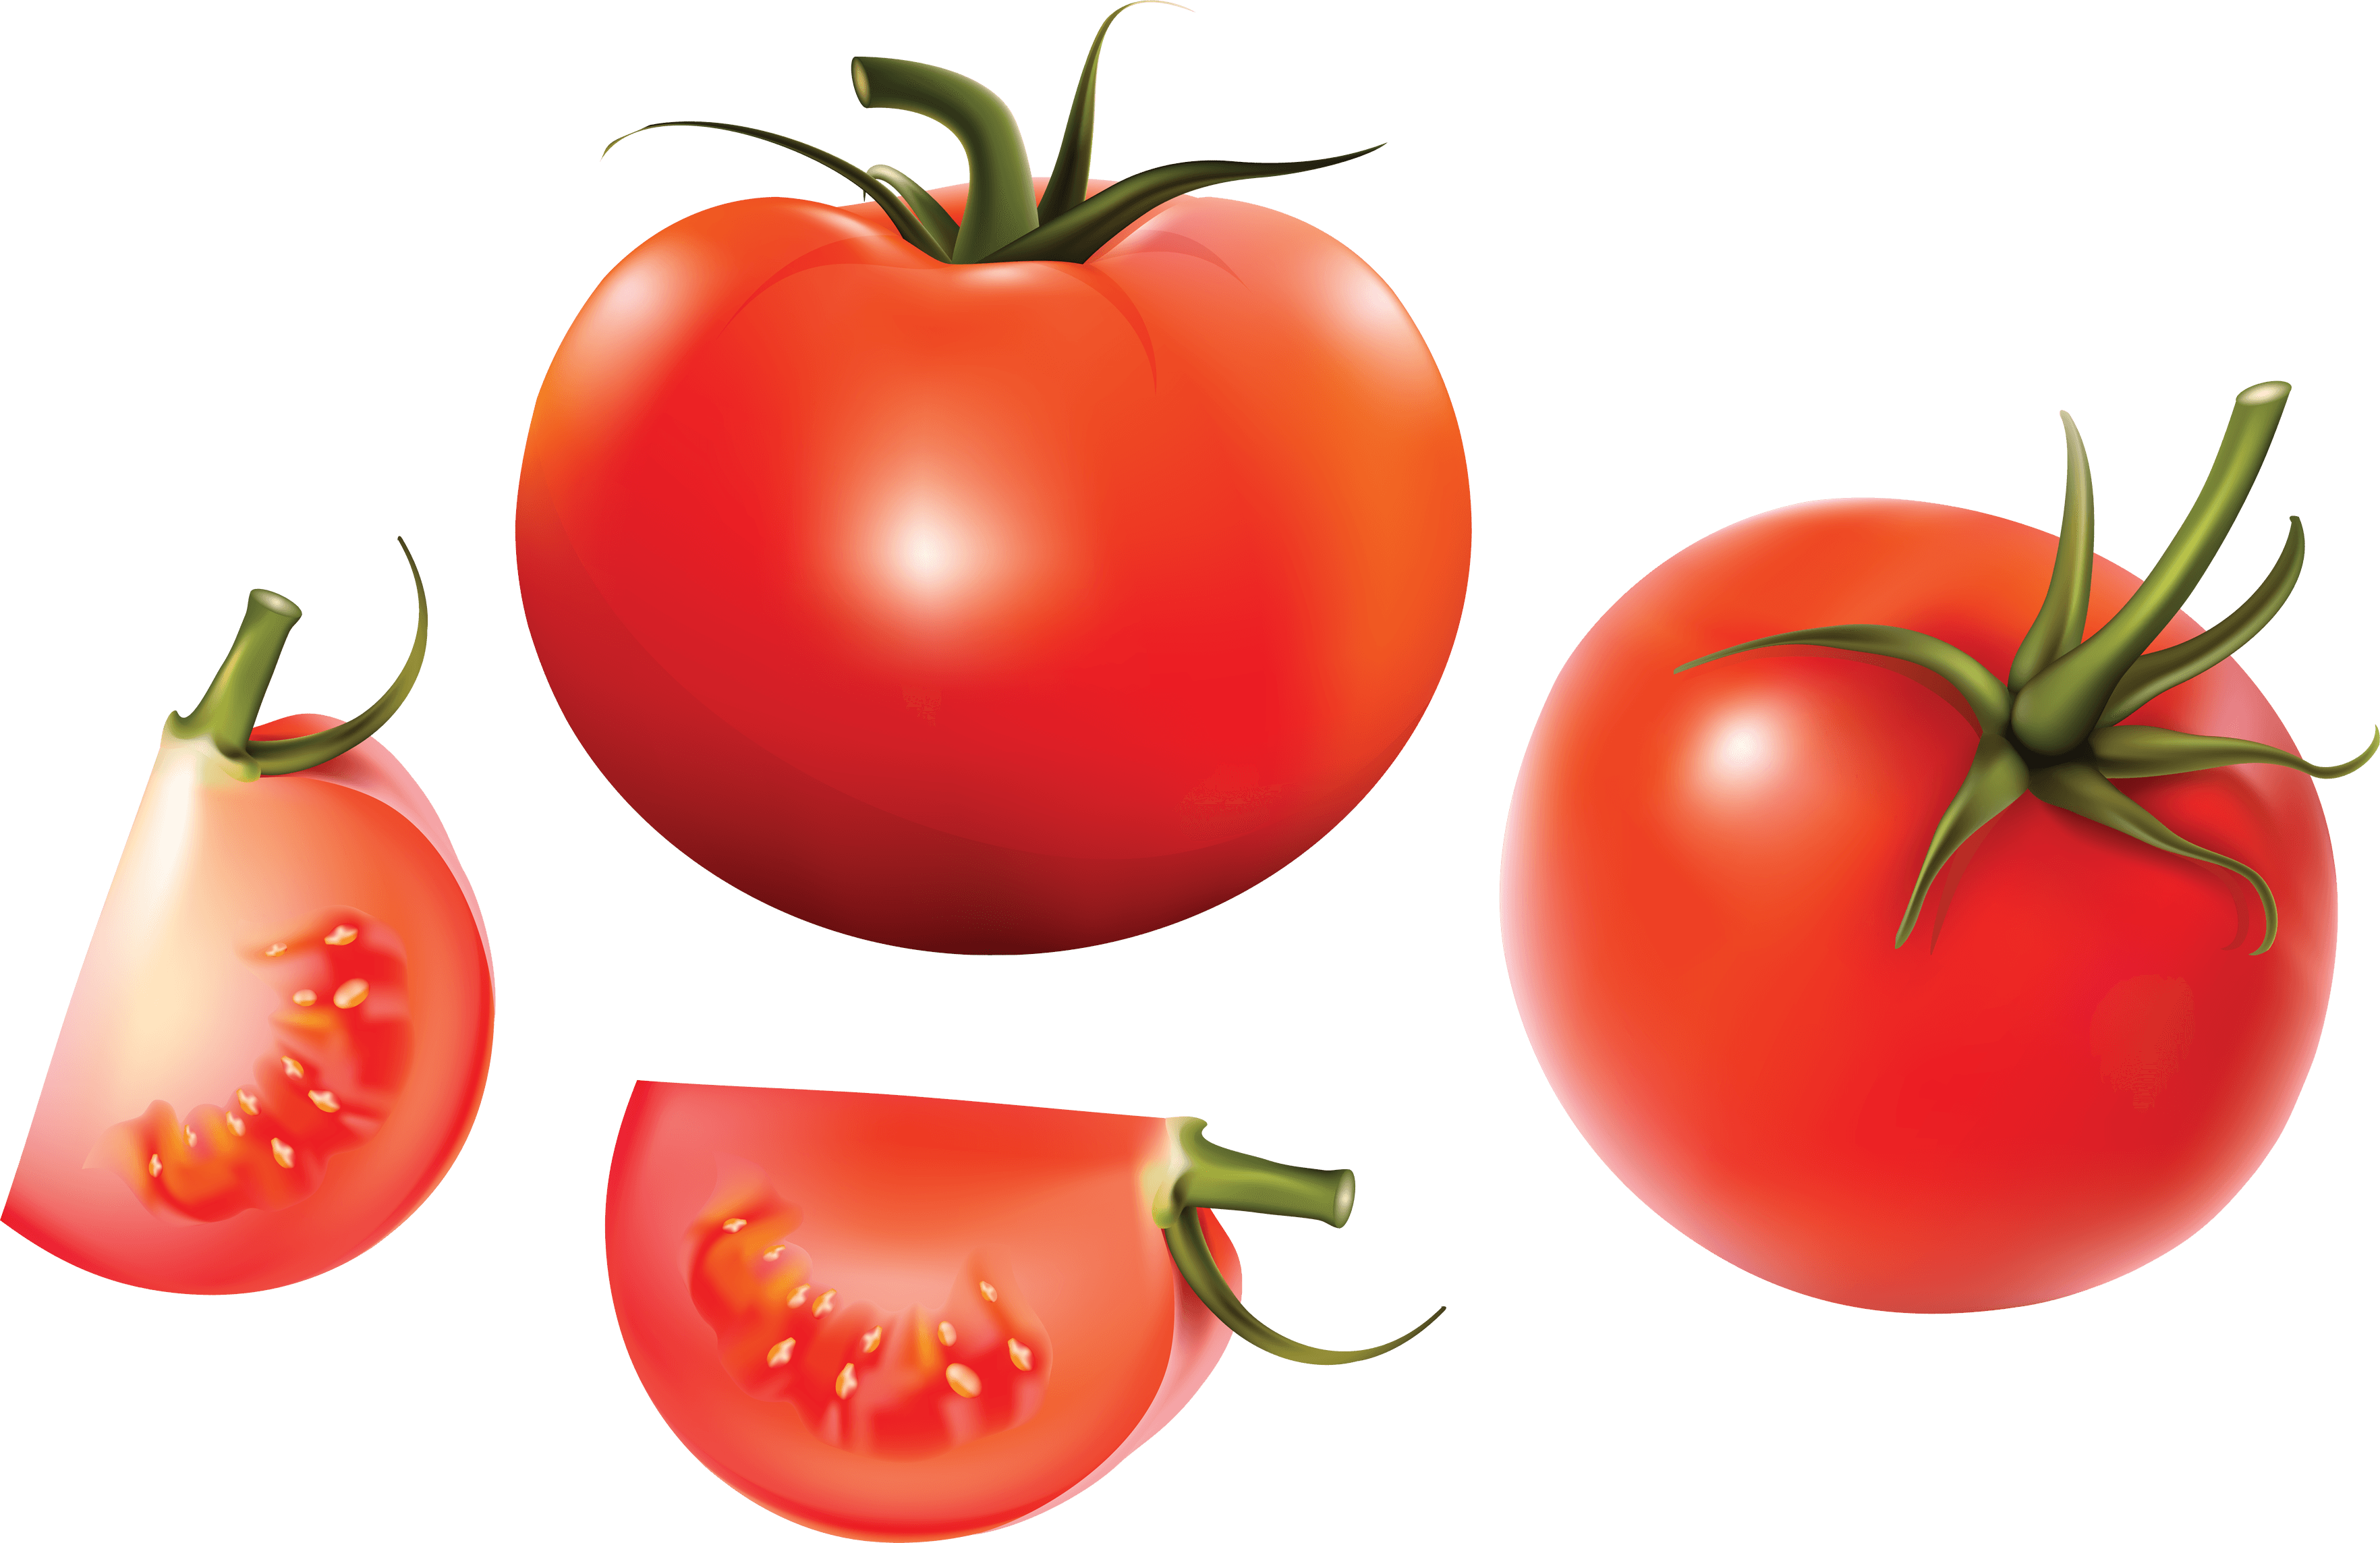 Tomato splattered frames illustrations. Tomatoes clipart vector